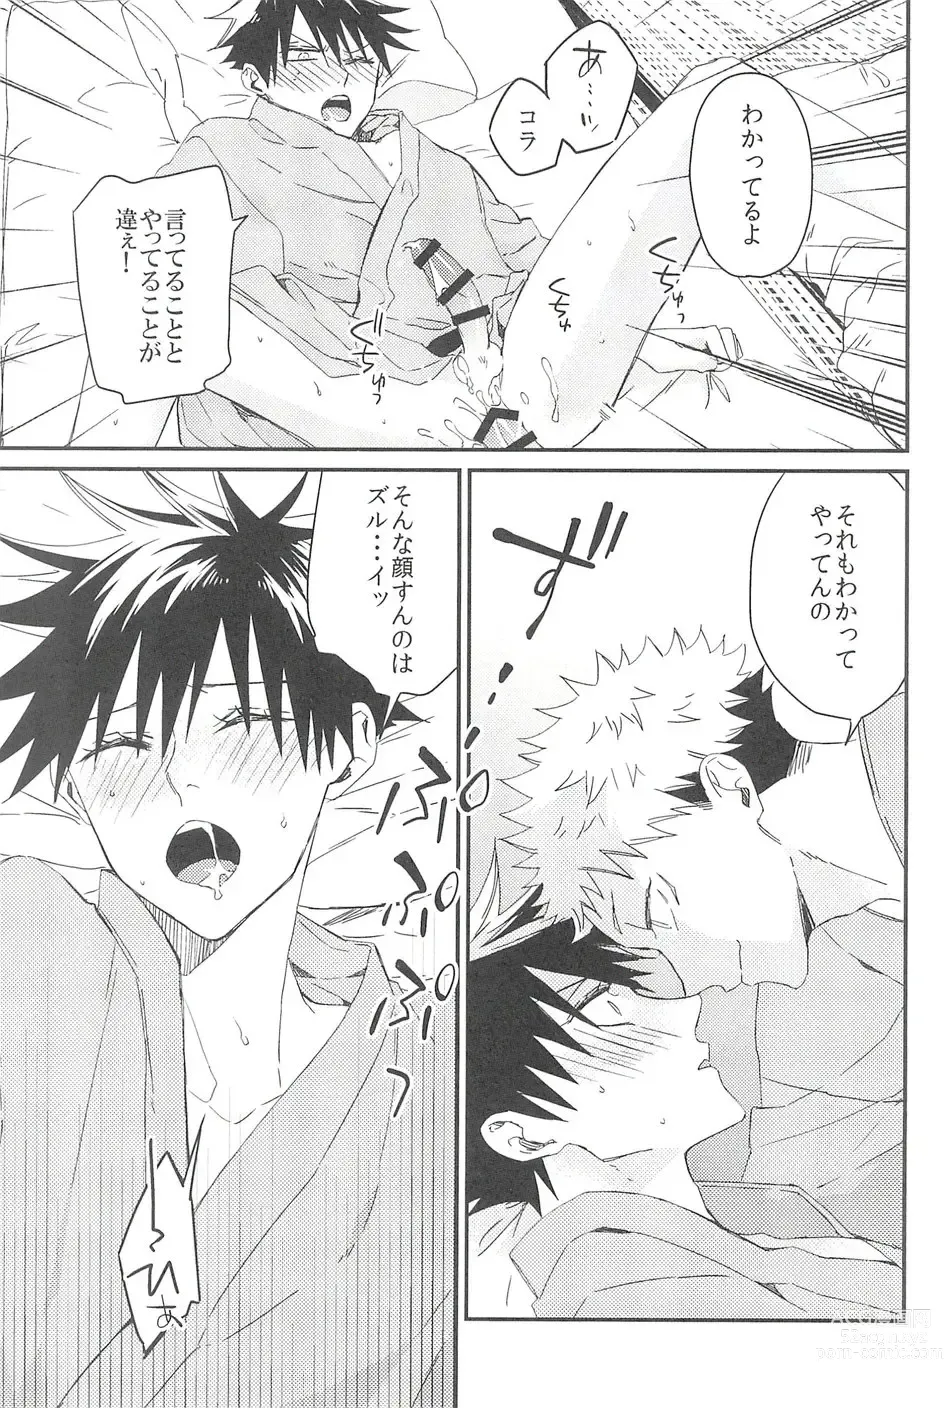 Page 16 of doujinshi Yoinokuchi kara